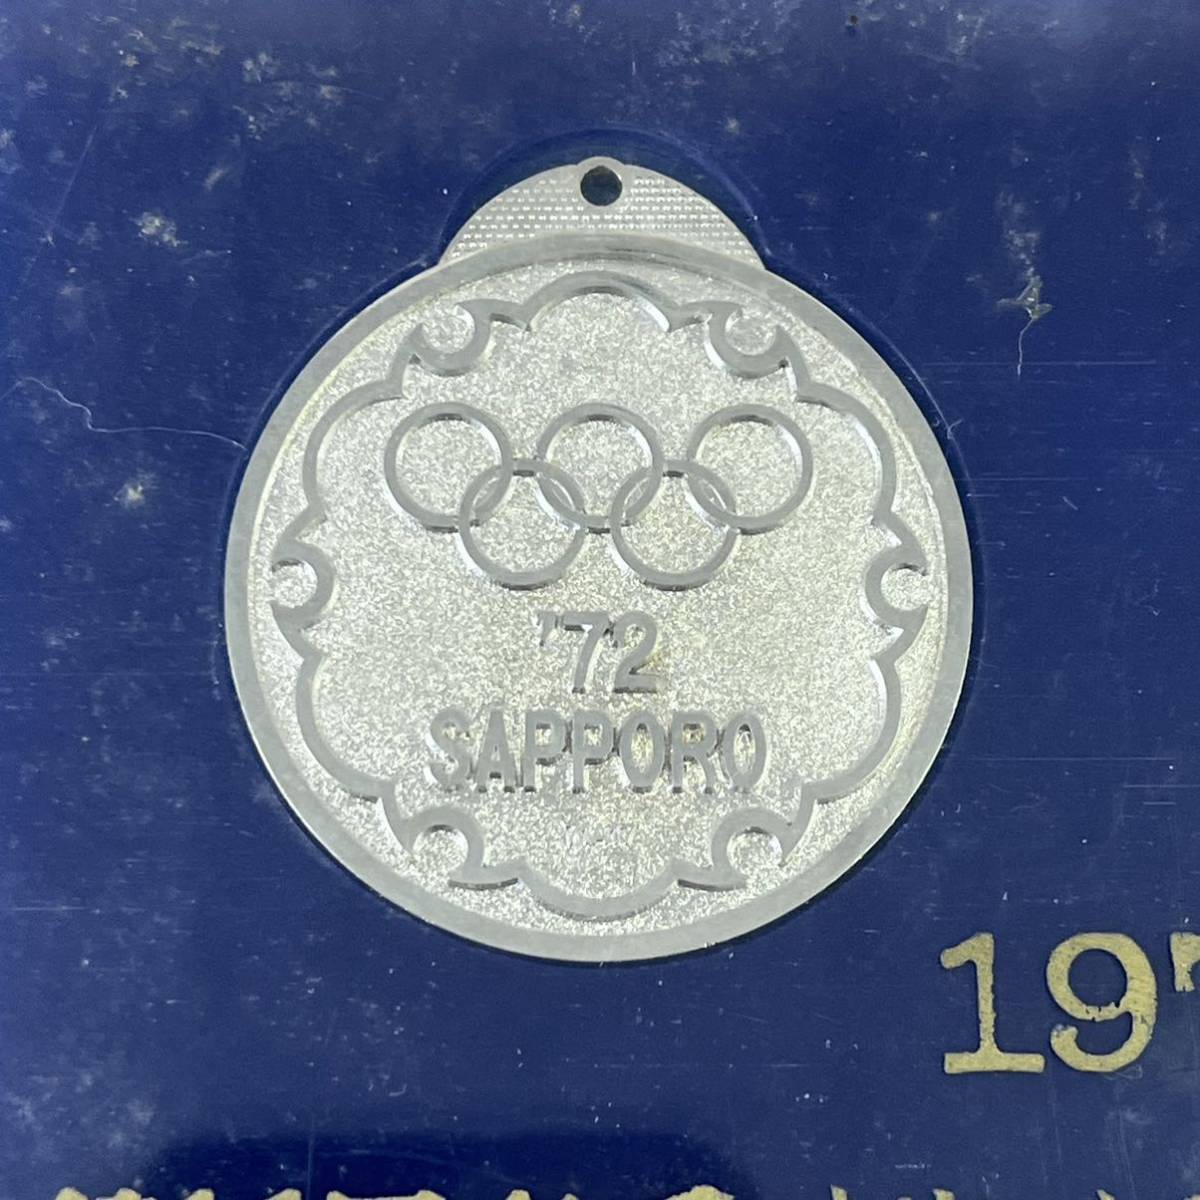 【TC0104】1972年 第11回 オリンピック 札幌大会記念メダル _画像2